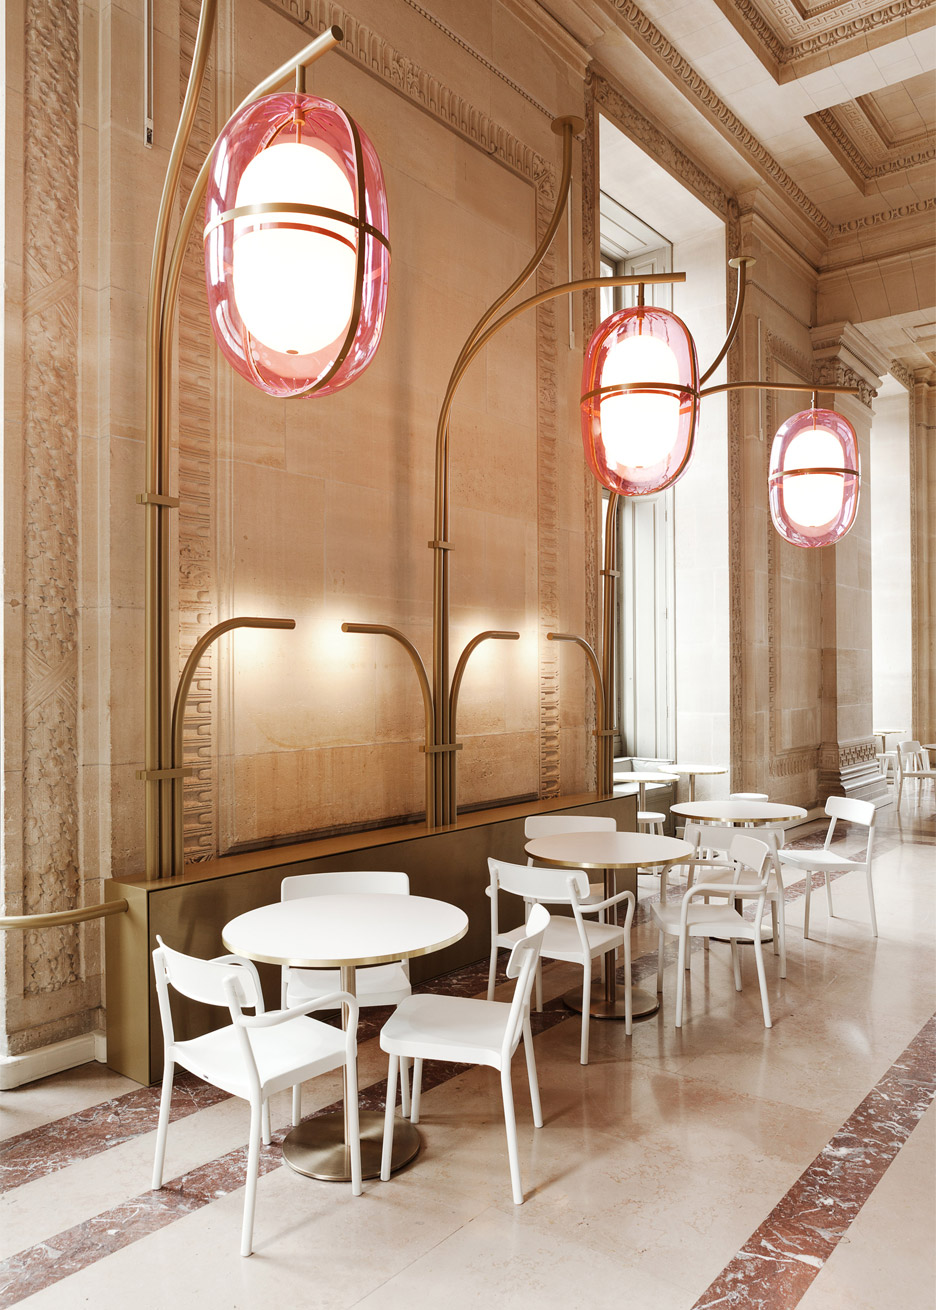 Café Mollien at the Louvre by Mathieu Lehanneur